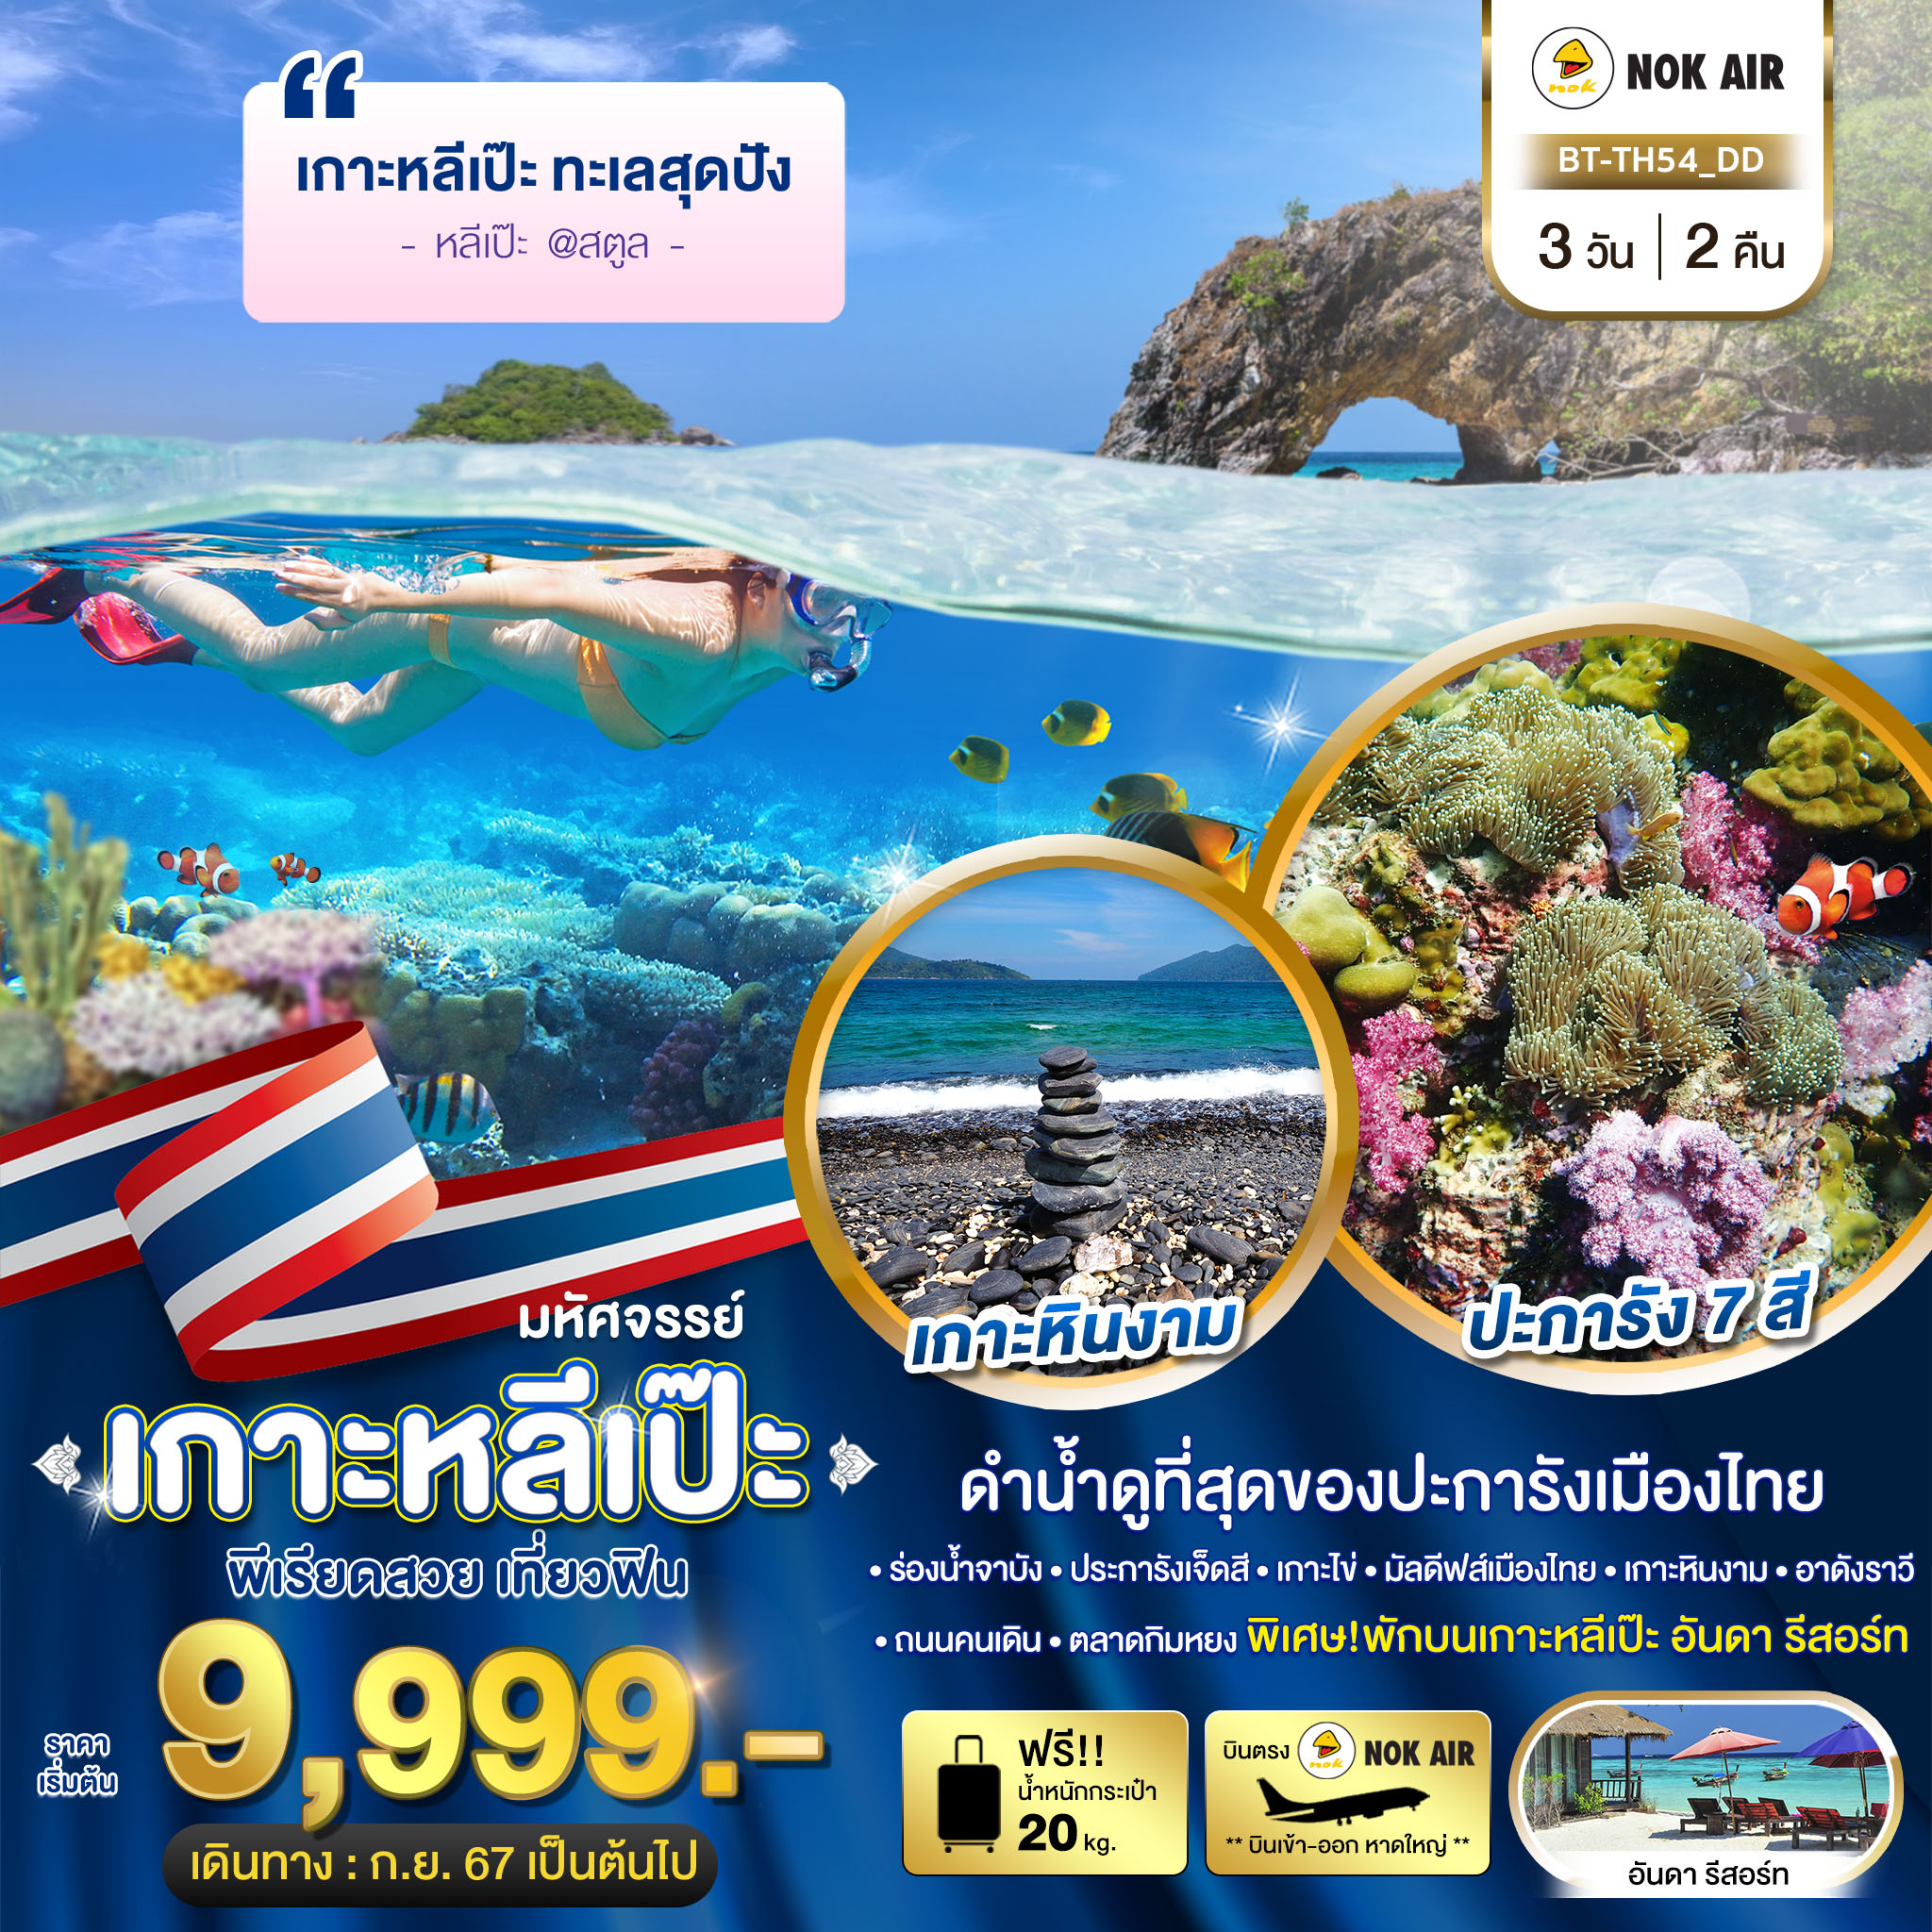 BT-TH54_DD มหัศจรรย์..เกาะหลีเป๊ะ ทะเลสุดปัง ดำน้ำดูที่สุดของประการังเมืองไทย